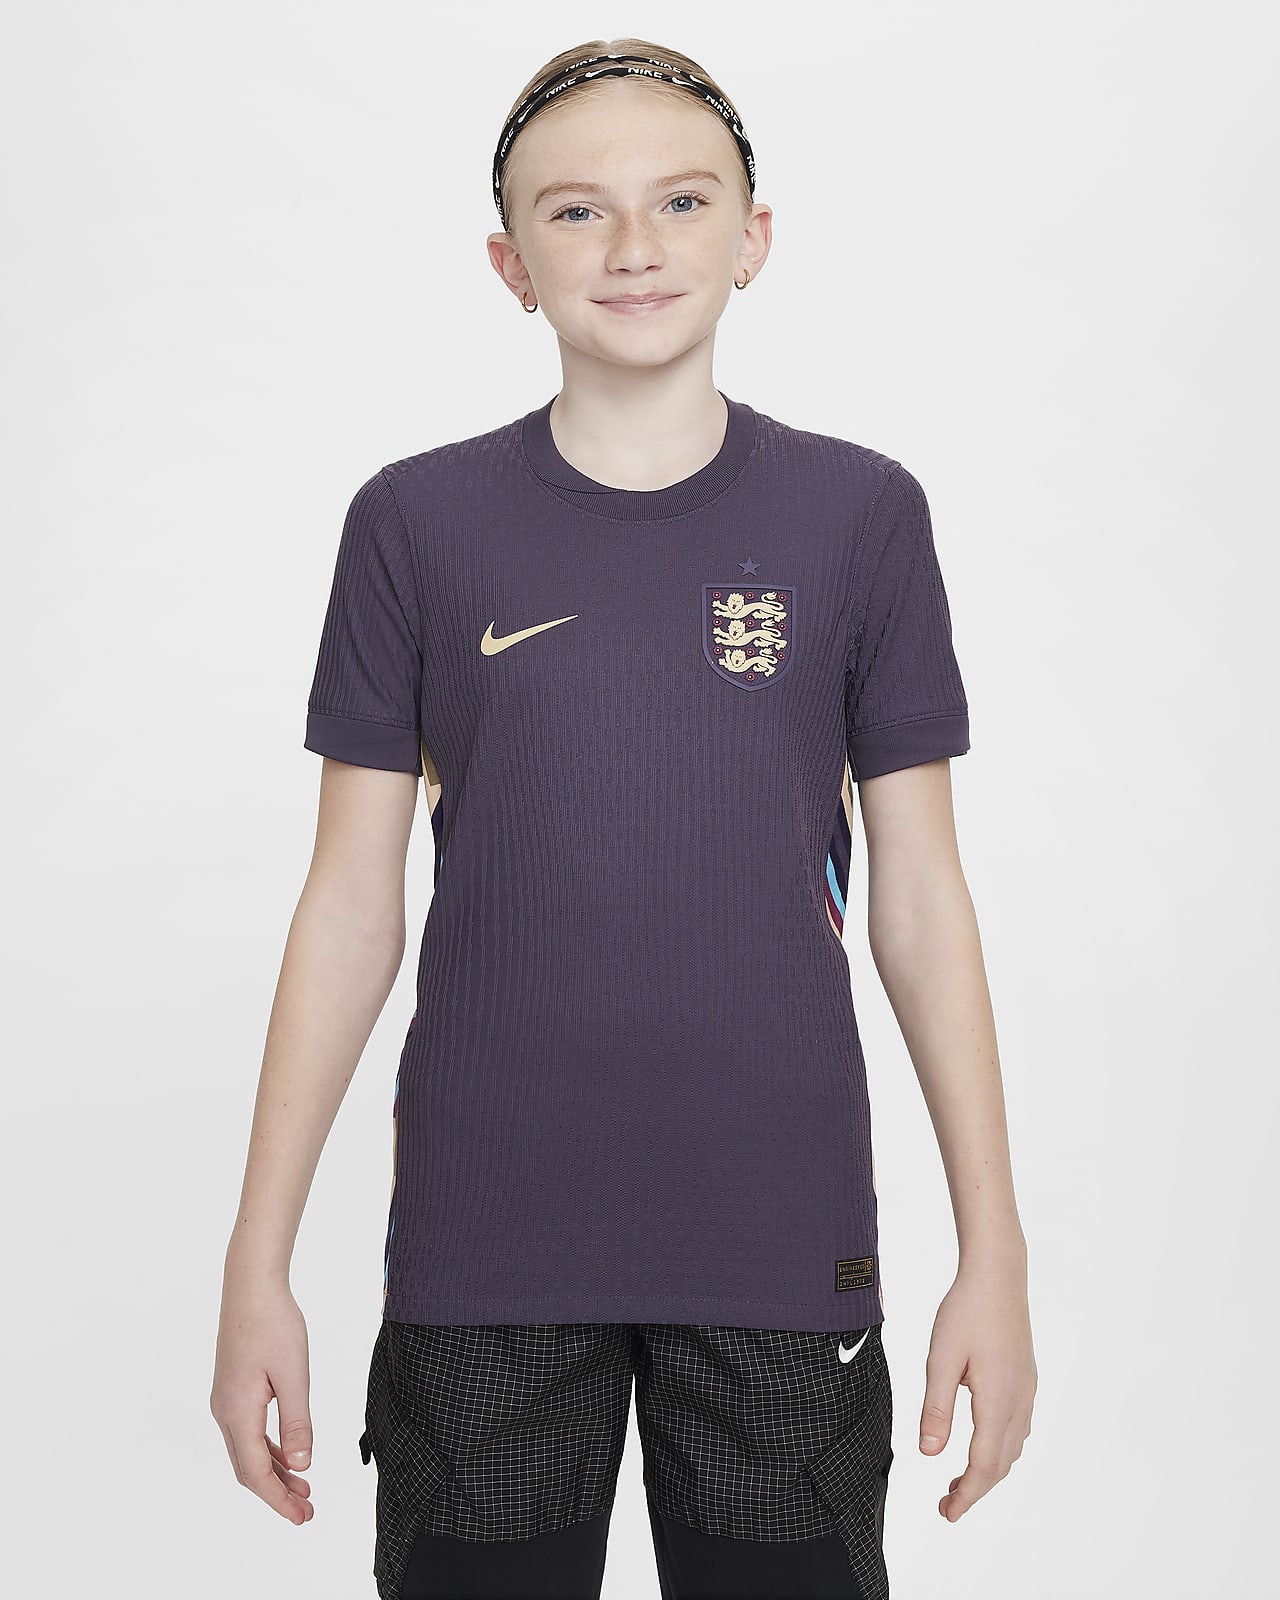 Εκτός έδρας ποδοσφαιρική φανέλα Nike Dri-FIT ADV Authentic Αγγλία 2024/25 Match (ανδρική ομάδα) για μεγάλα παιδιά